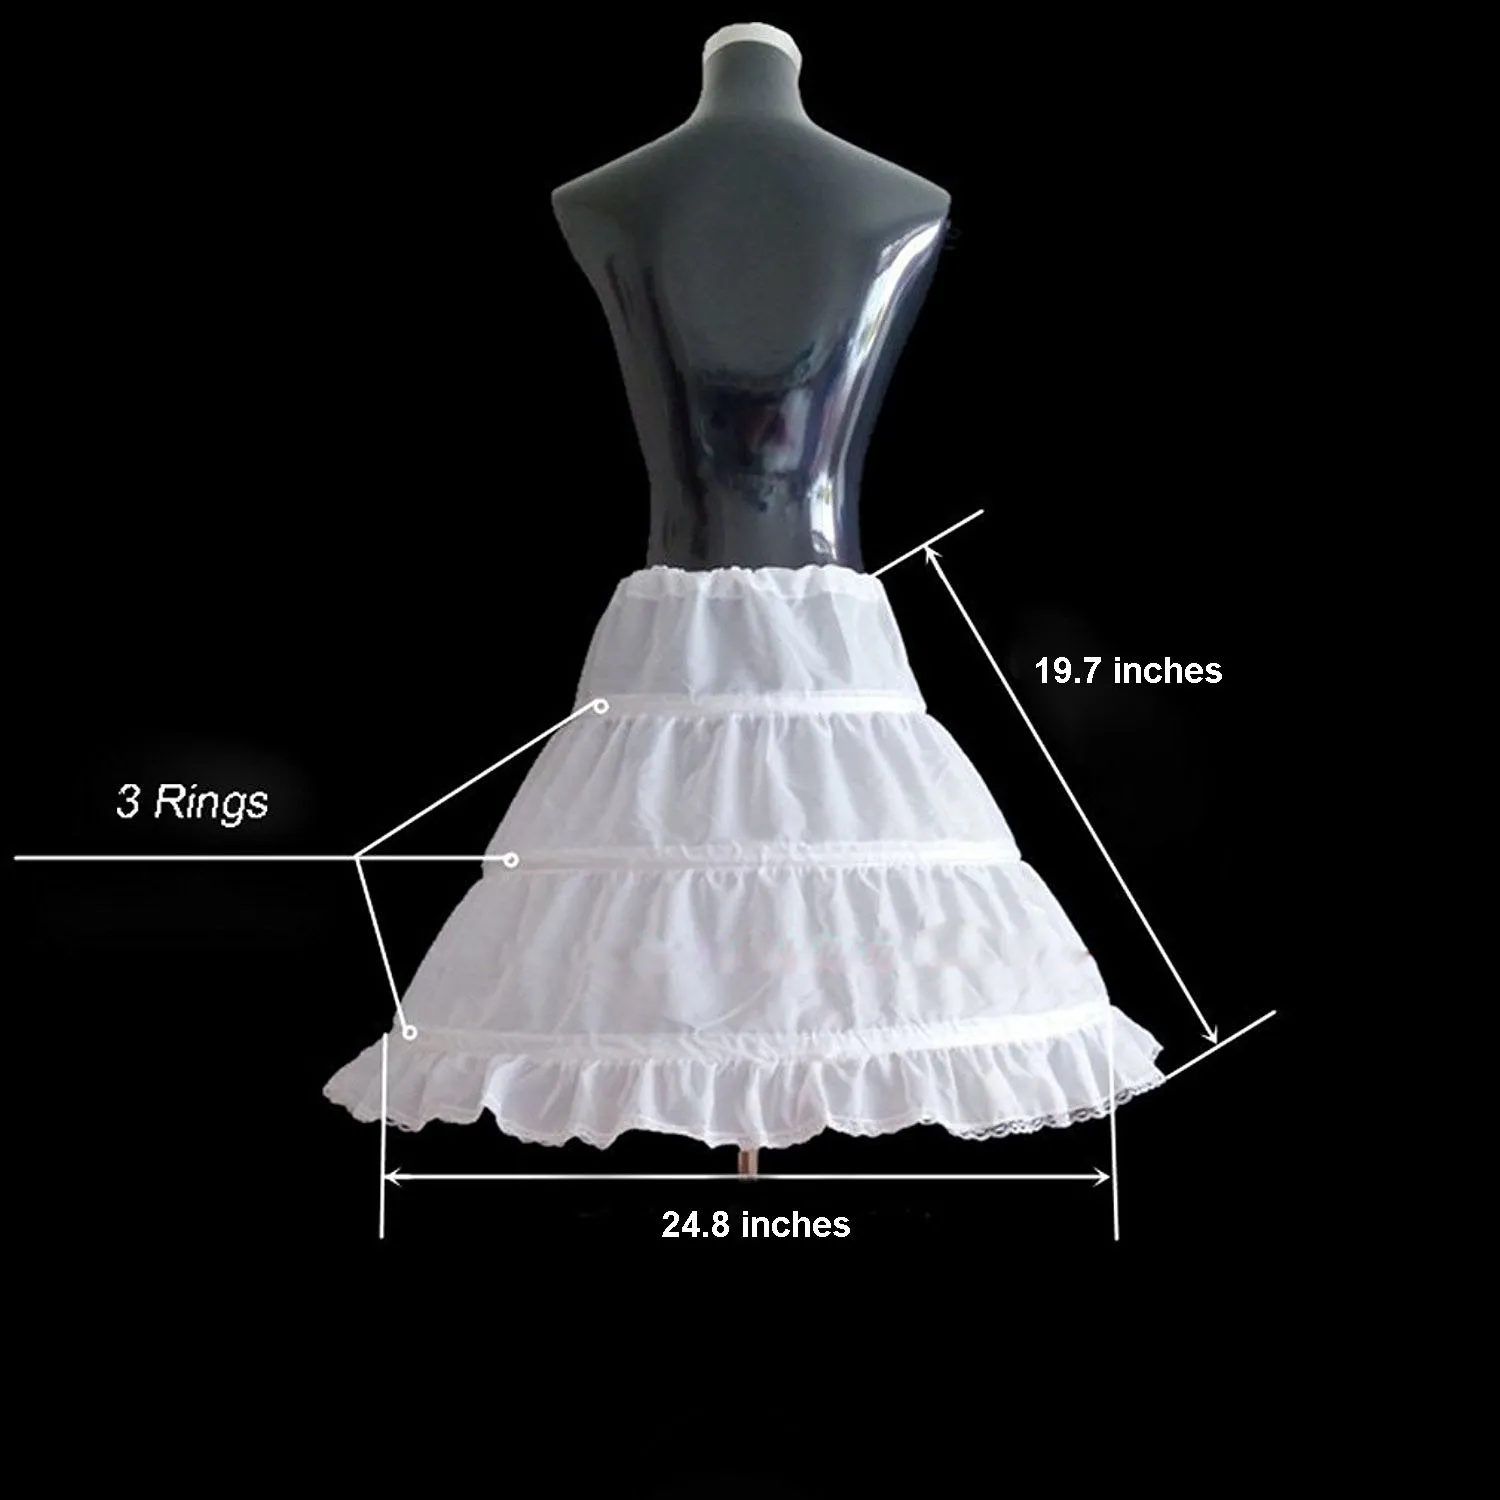 2019 Ny ankomst Aline 3 Rings Petticoat High Quality Underskirt For Wedding Children Half Slips Flower Girls Dresses Princess PE1144075